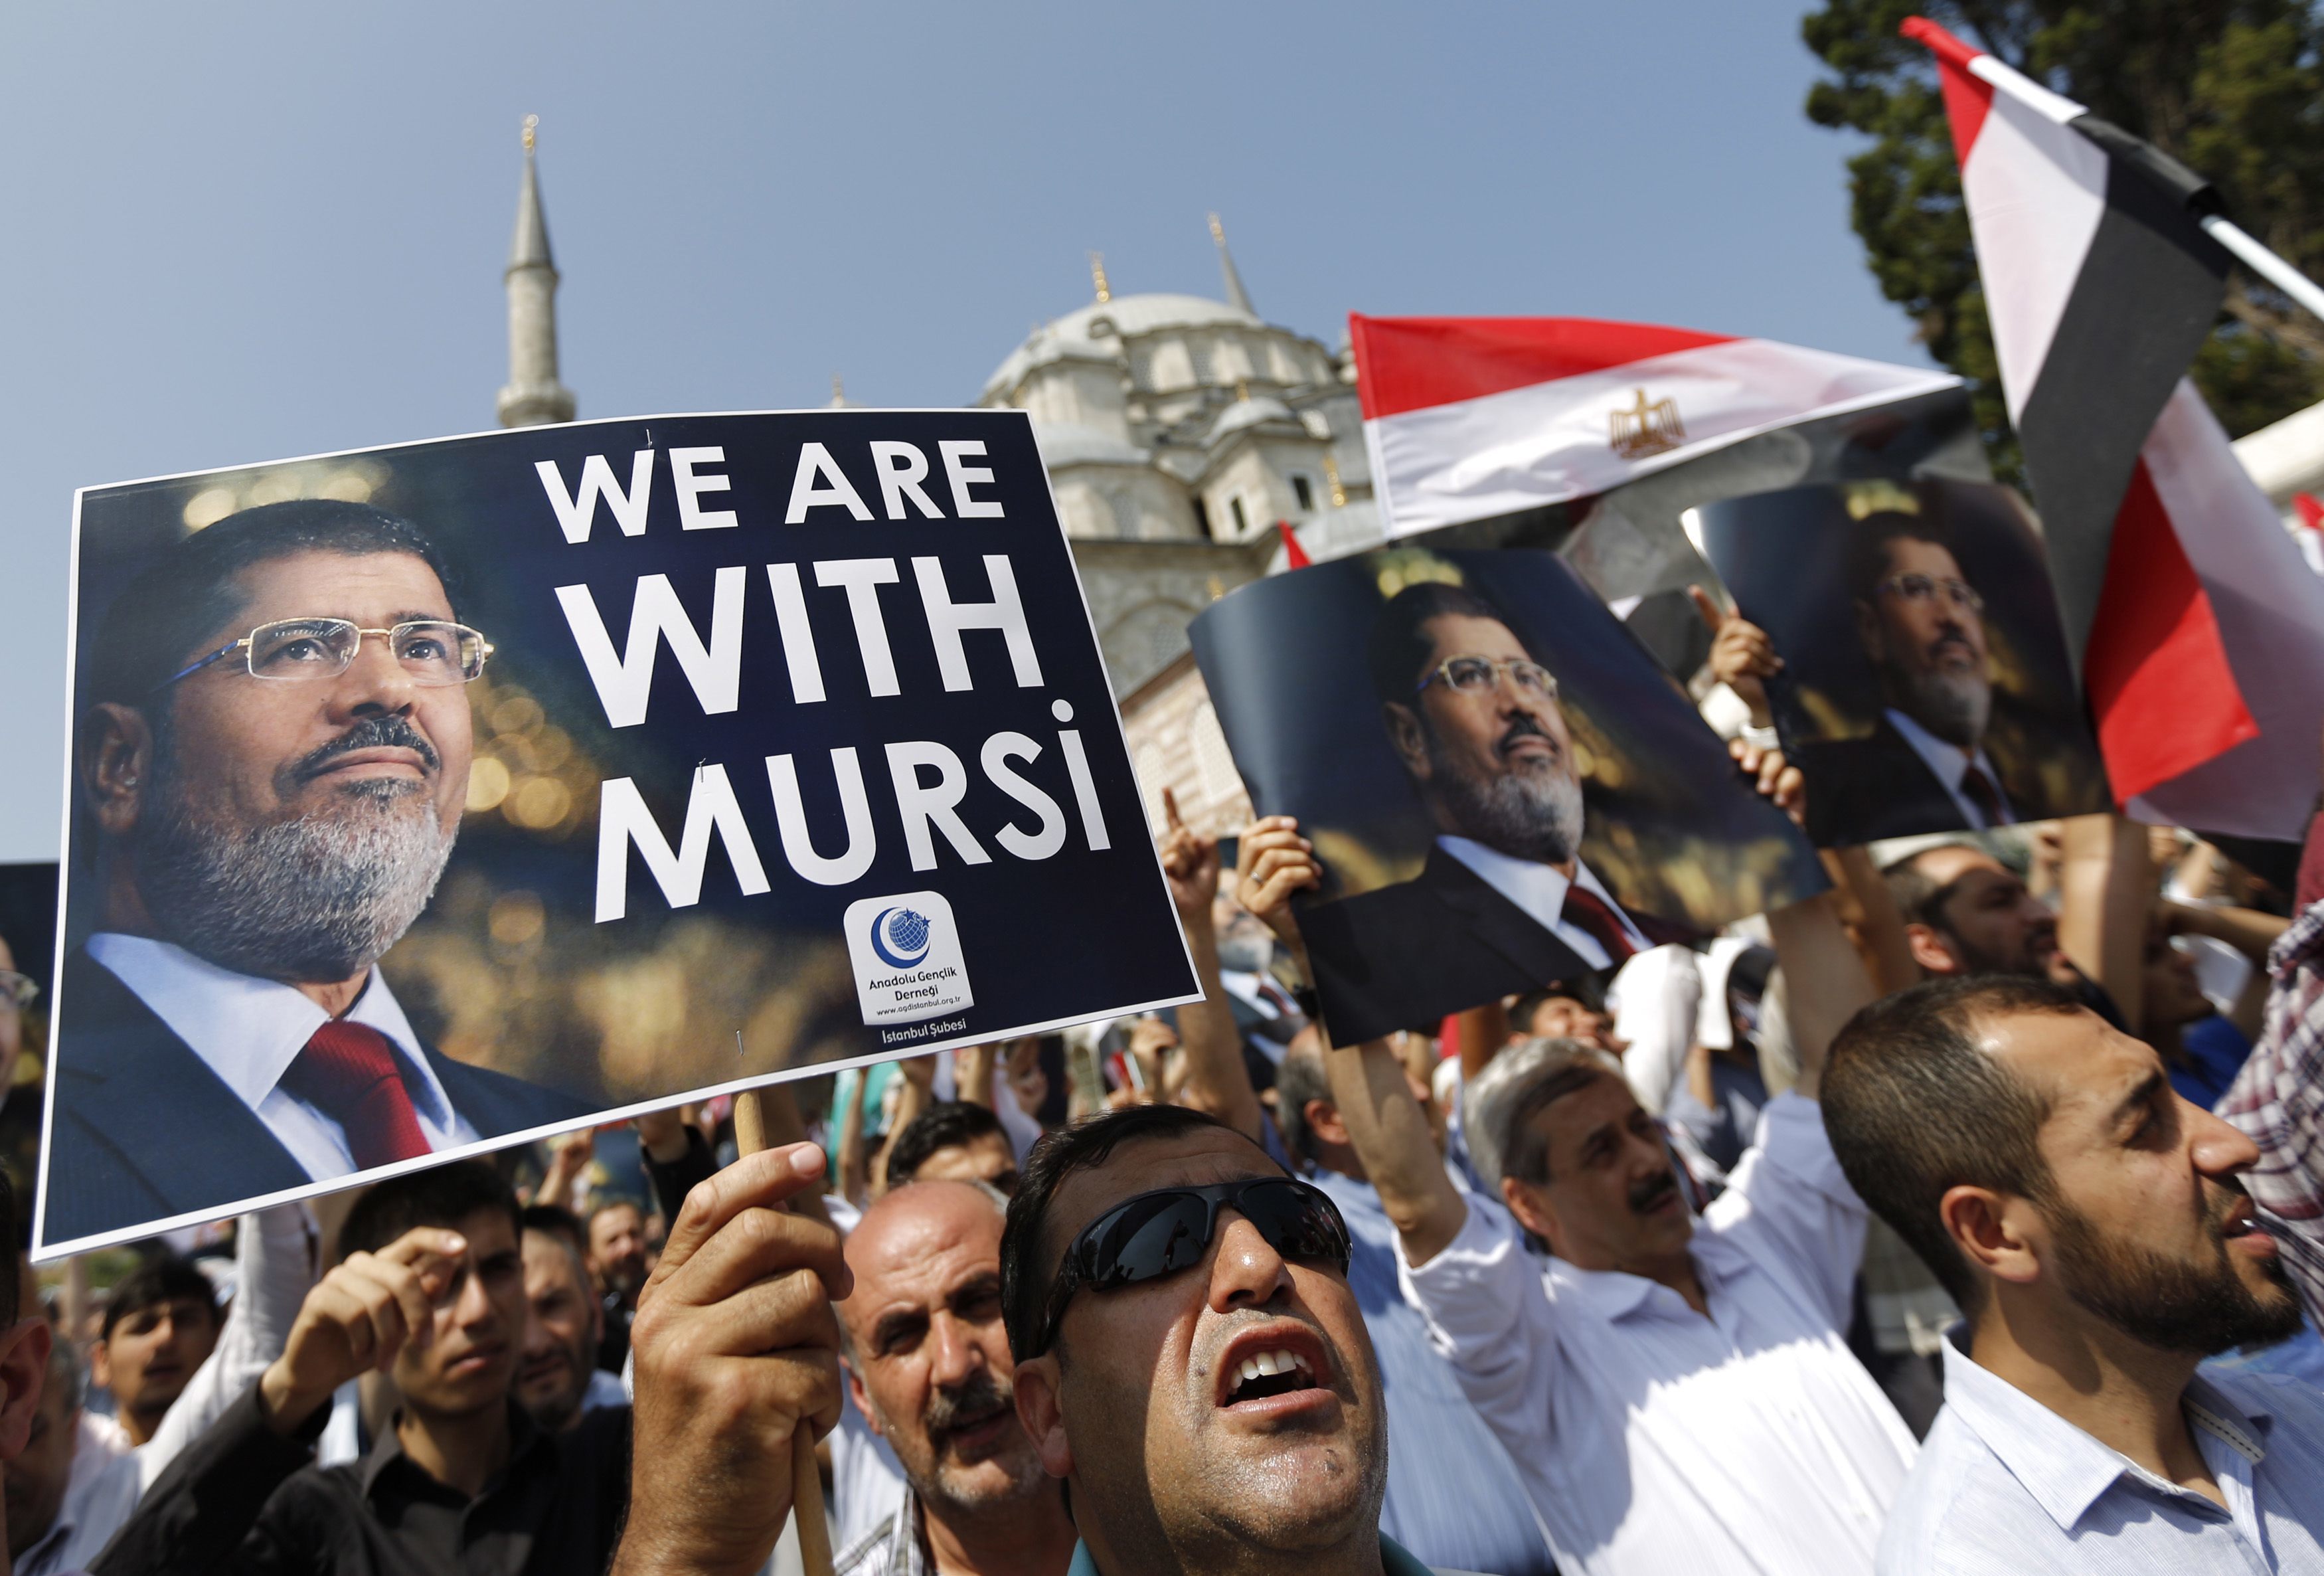 Οι Τούρκοι οπαδοί του Μόρσι βγήκαν στους δρόμους (ΦΩΤΟ)